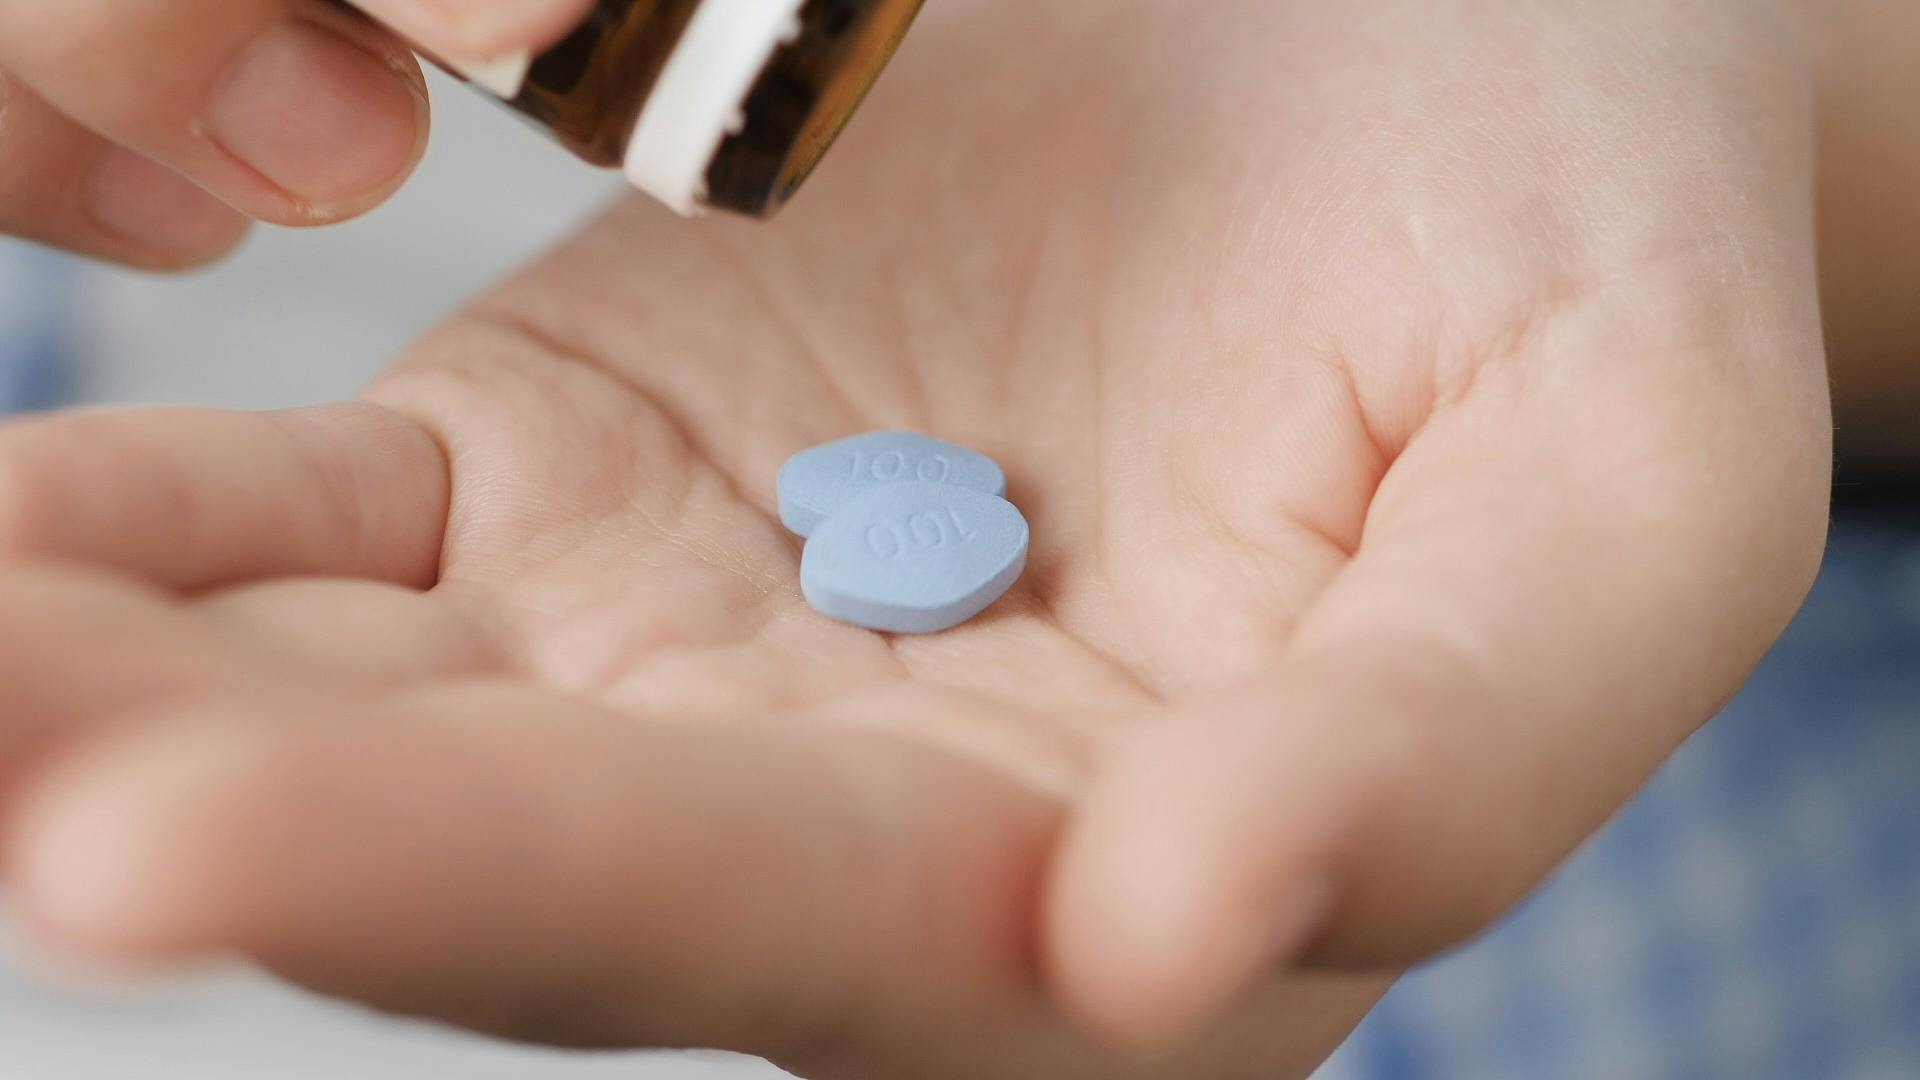 Blaue Viagra-Pillen werden in den Handflächen gehalten